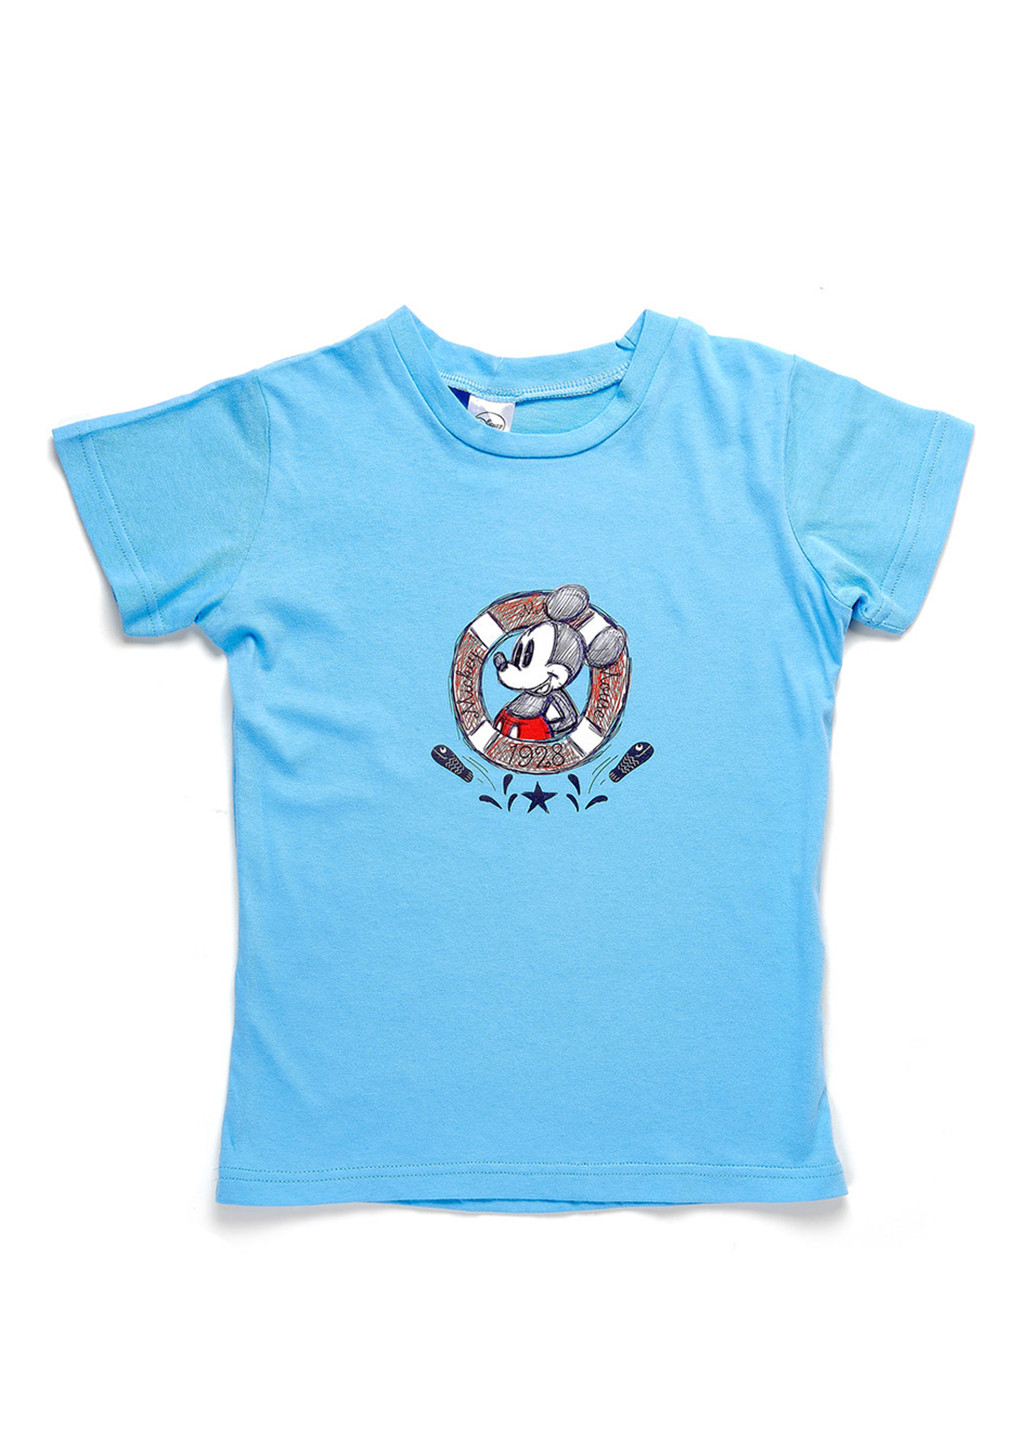 Голубая летняя футболка с коротким рукавом Disney Arditex